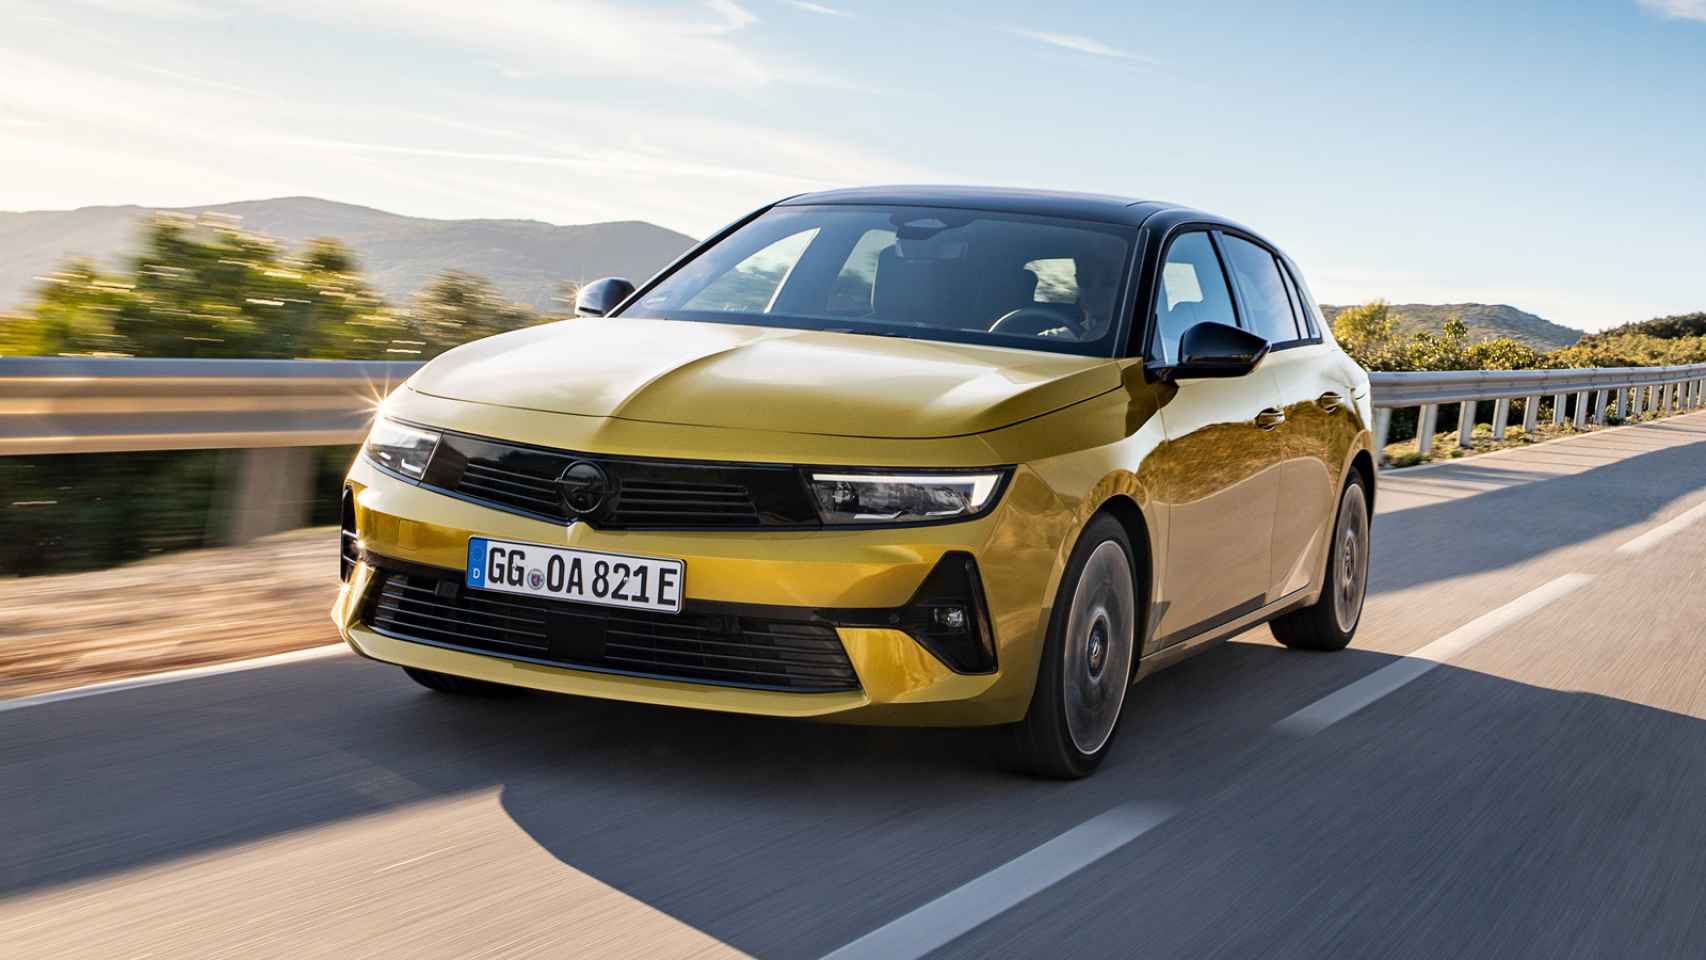 El nuevo Opel Astra incorpora versiones de gasolina, diésel y una variante híbrida enchufable.